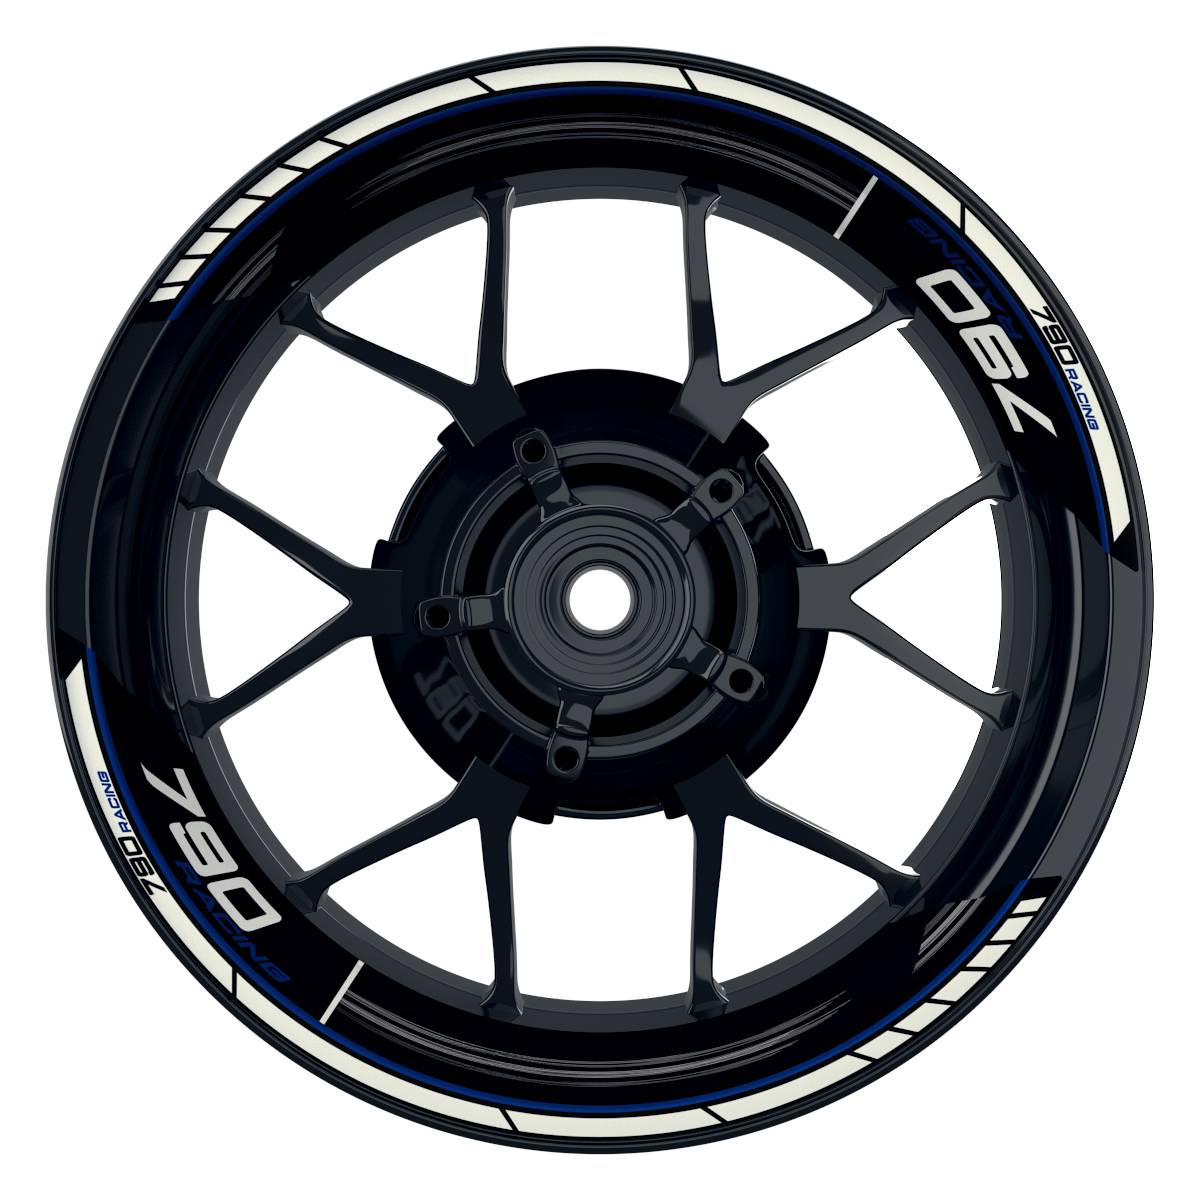 KTM Racing 790 Scratched schwarz blau Frontansicht